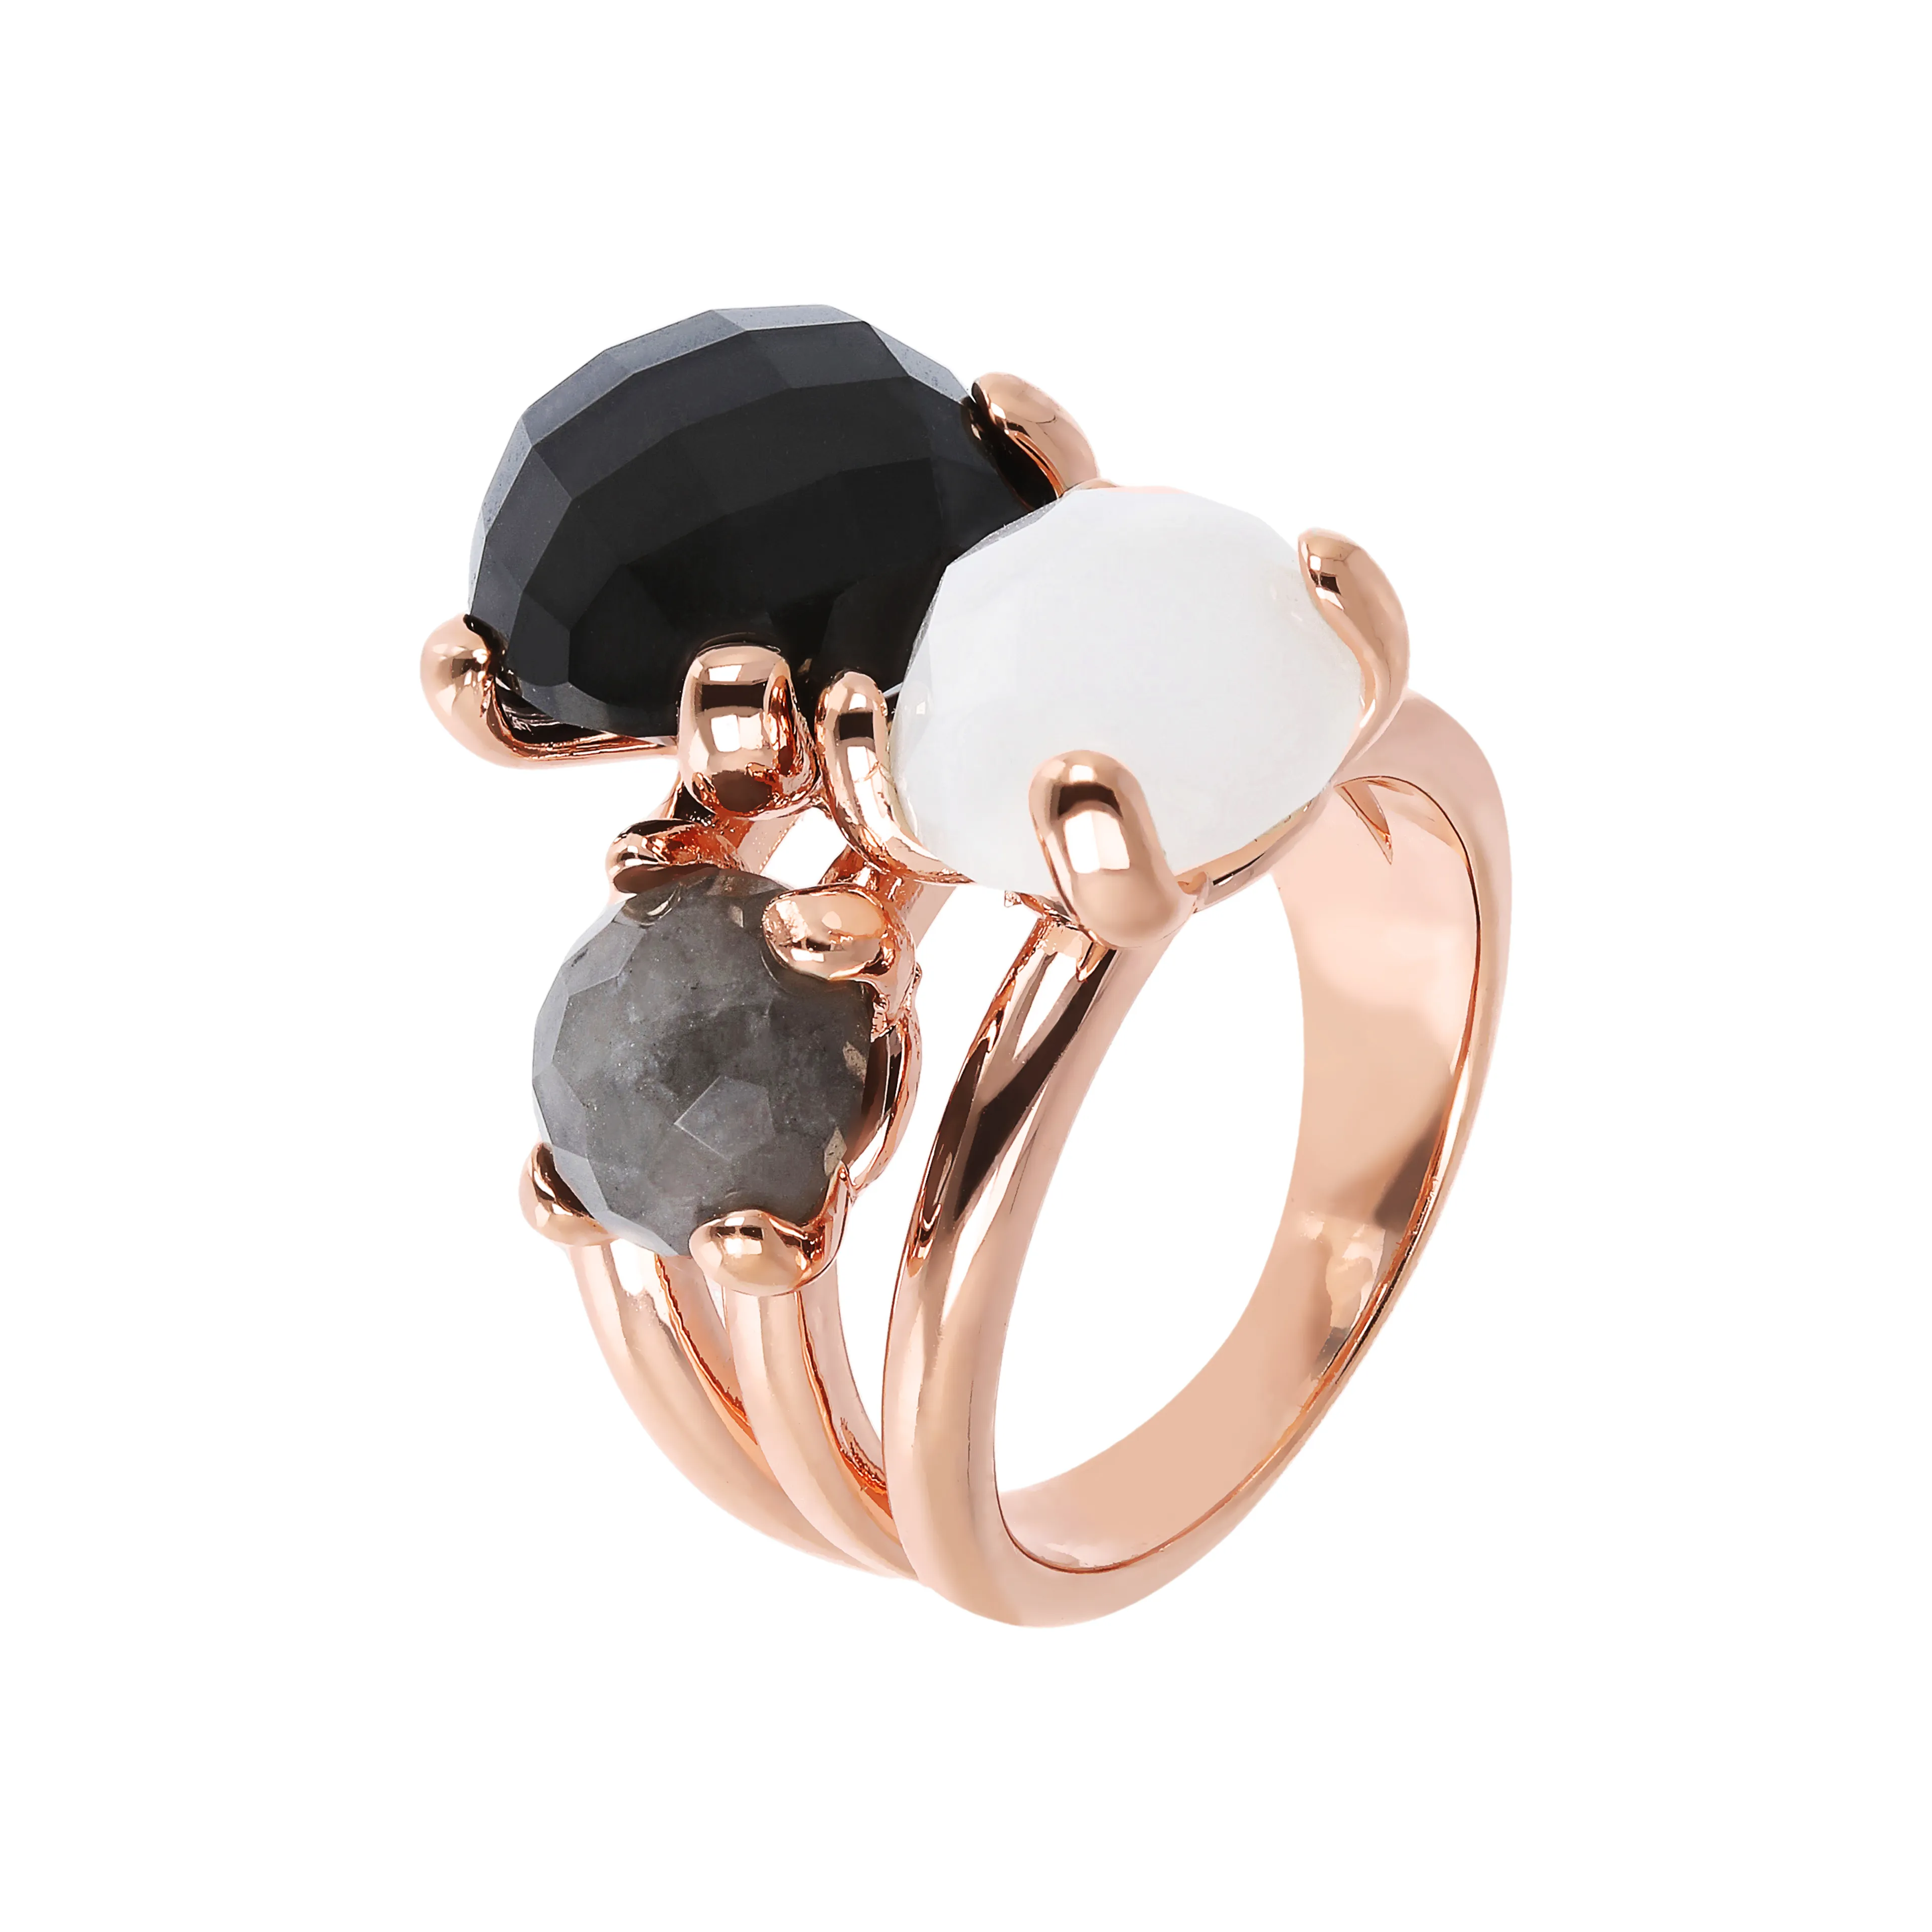 Женское кольцо из бронзы Bronzallure Felicia с агатом, кварцем и ониксом